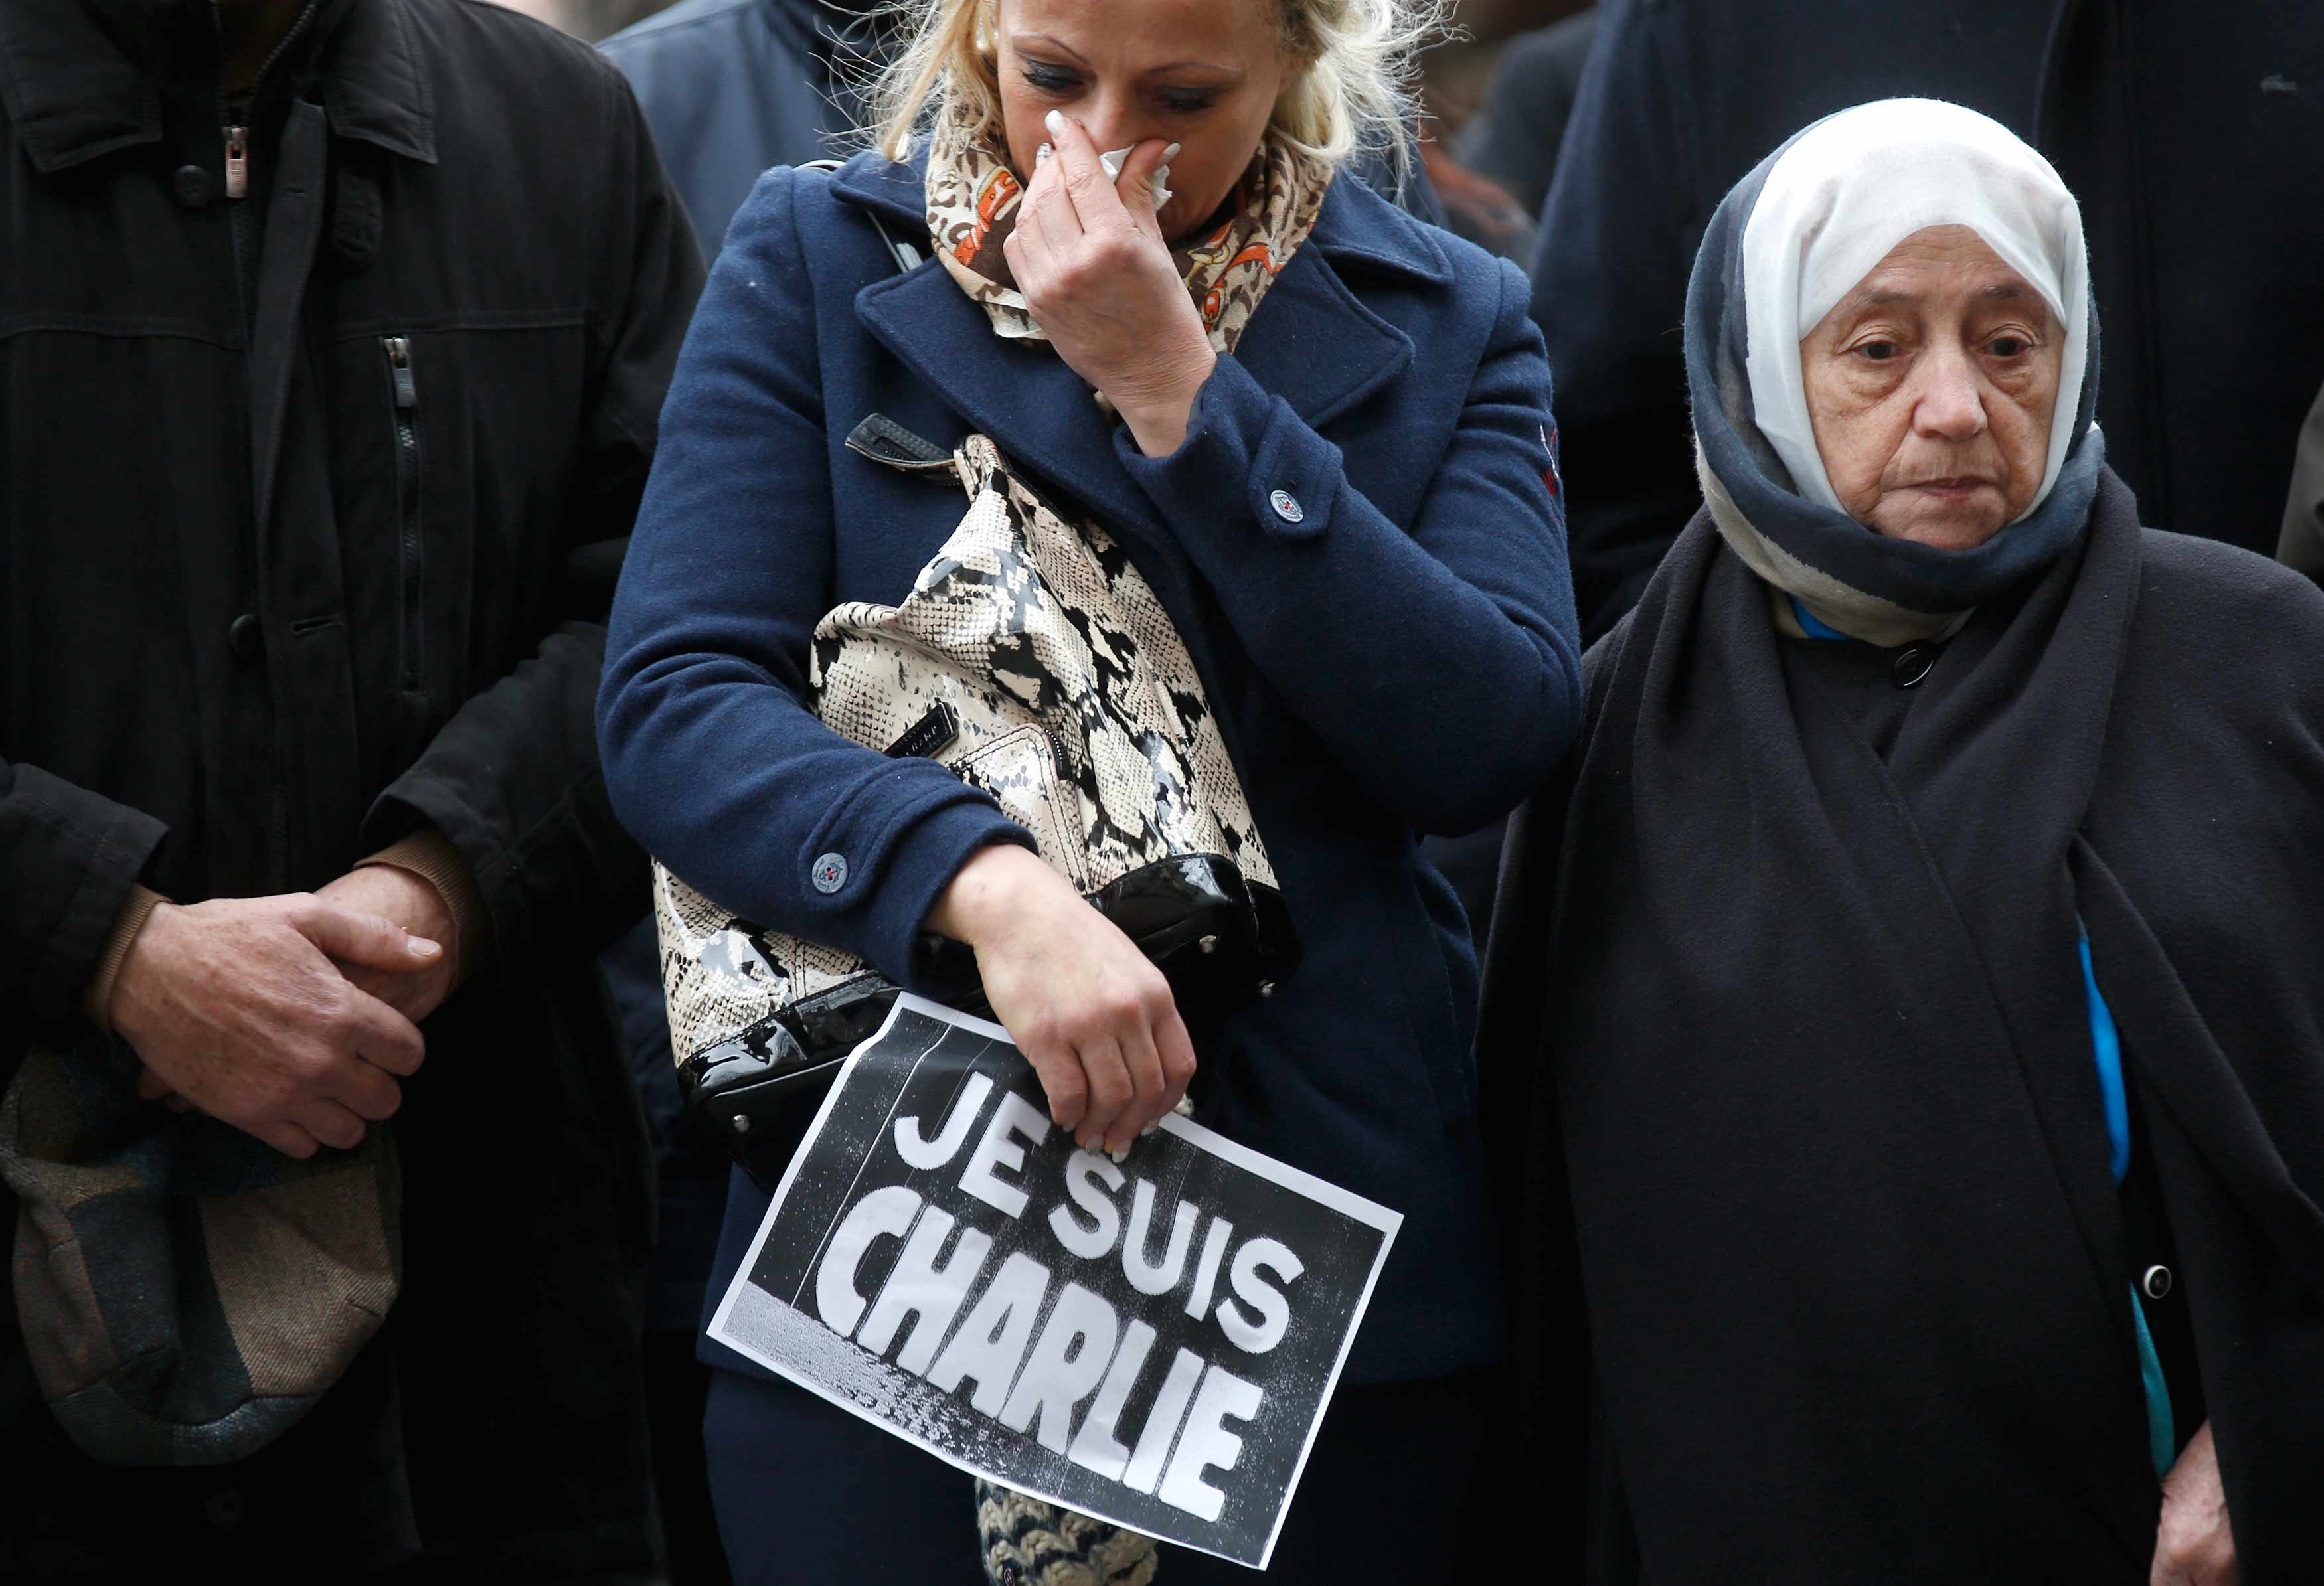 De verliezers van #CharlieHebdo